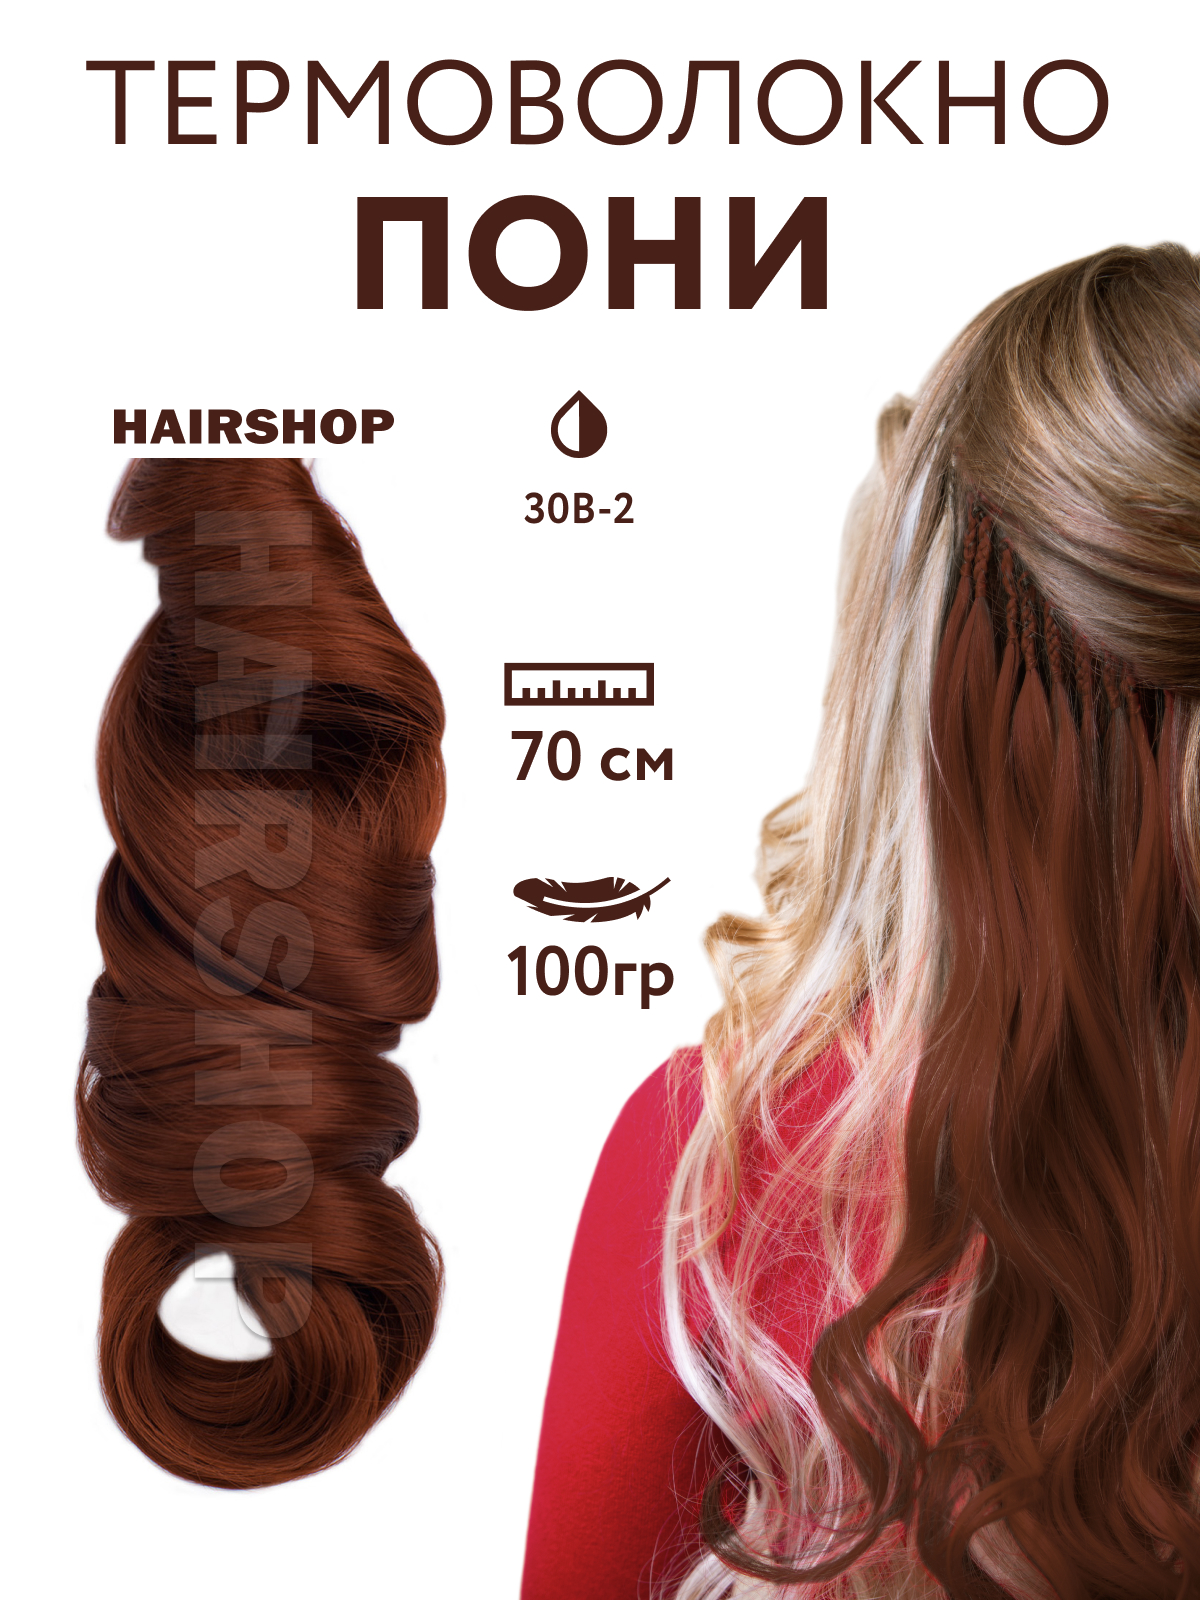 Канекалон HAIRSHOP Пони HairUp для точечного афронаращивания 30B-2 Натурально рыжий 1,4м